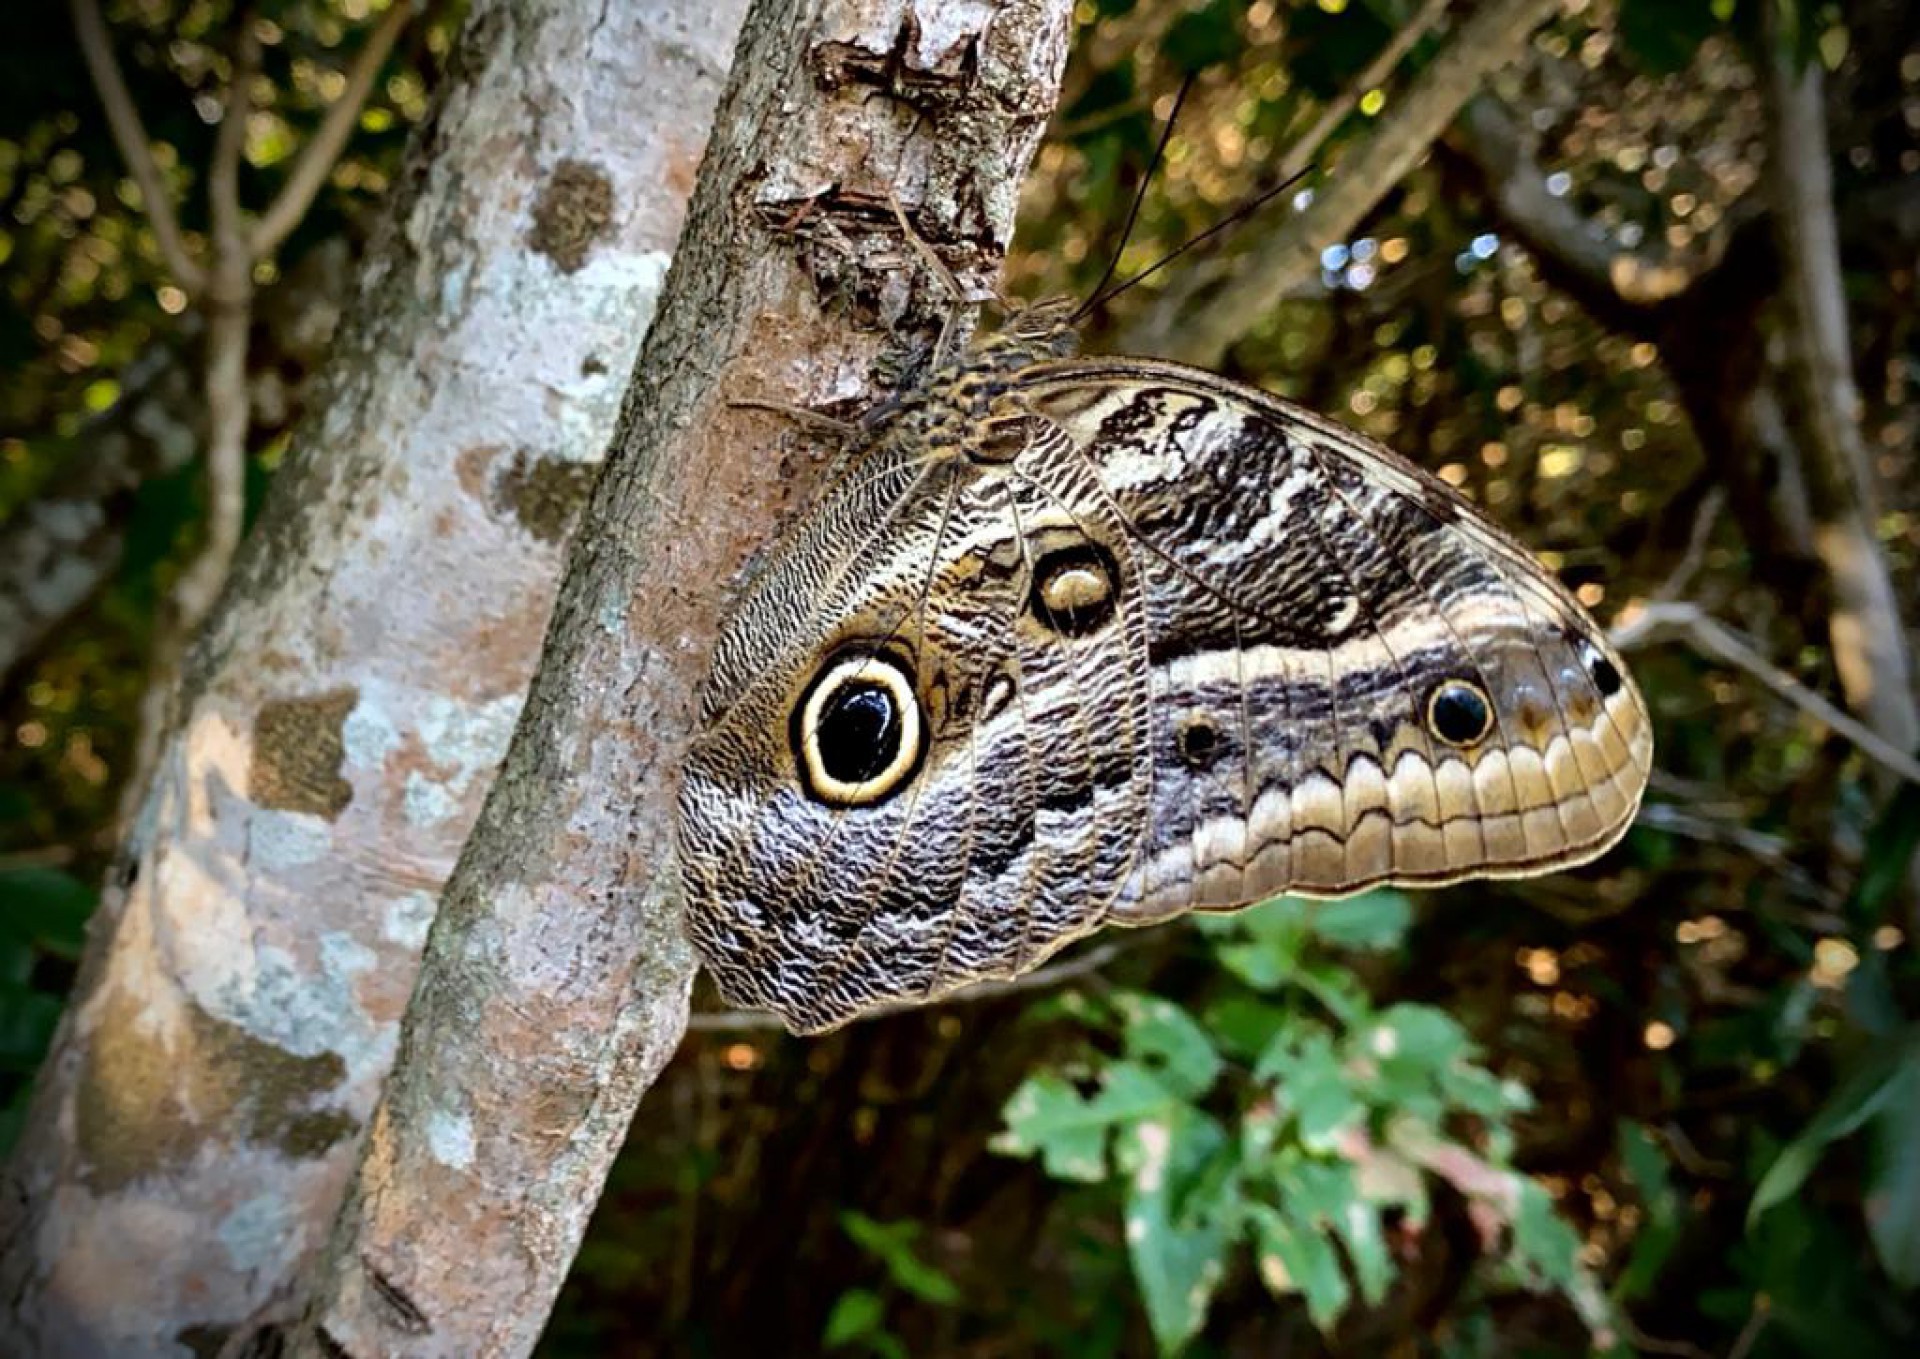 Clicada por Demitri Tulio, no Parque Municipal das Dunas da Sabiaguaba, a borboleta-coruja e suas asas fingidoras. O desenho de um olho e dentes simulam a cabeça de uma cobra e afugentam o predador (Foto: DEMITRI TÚLIO)